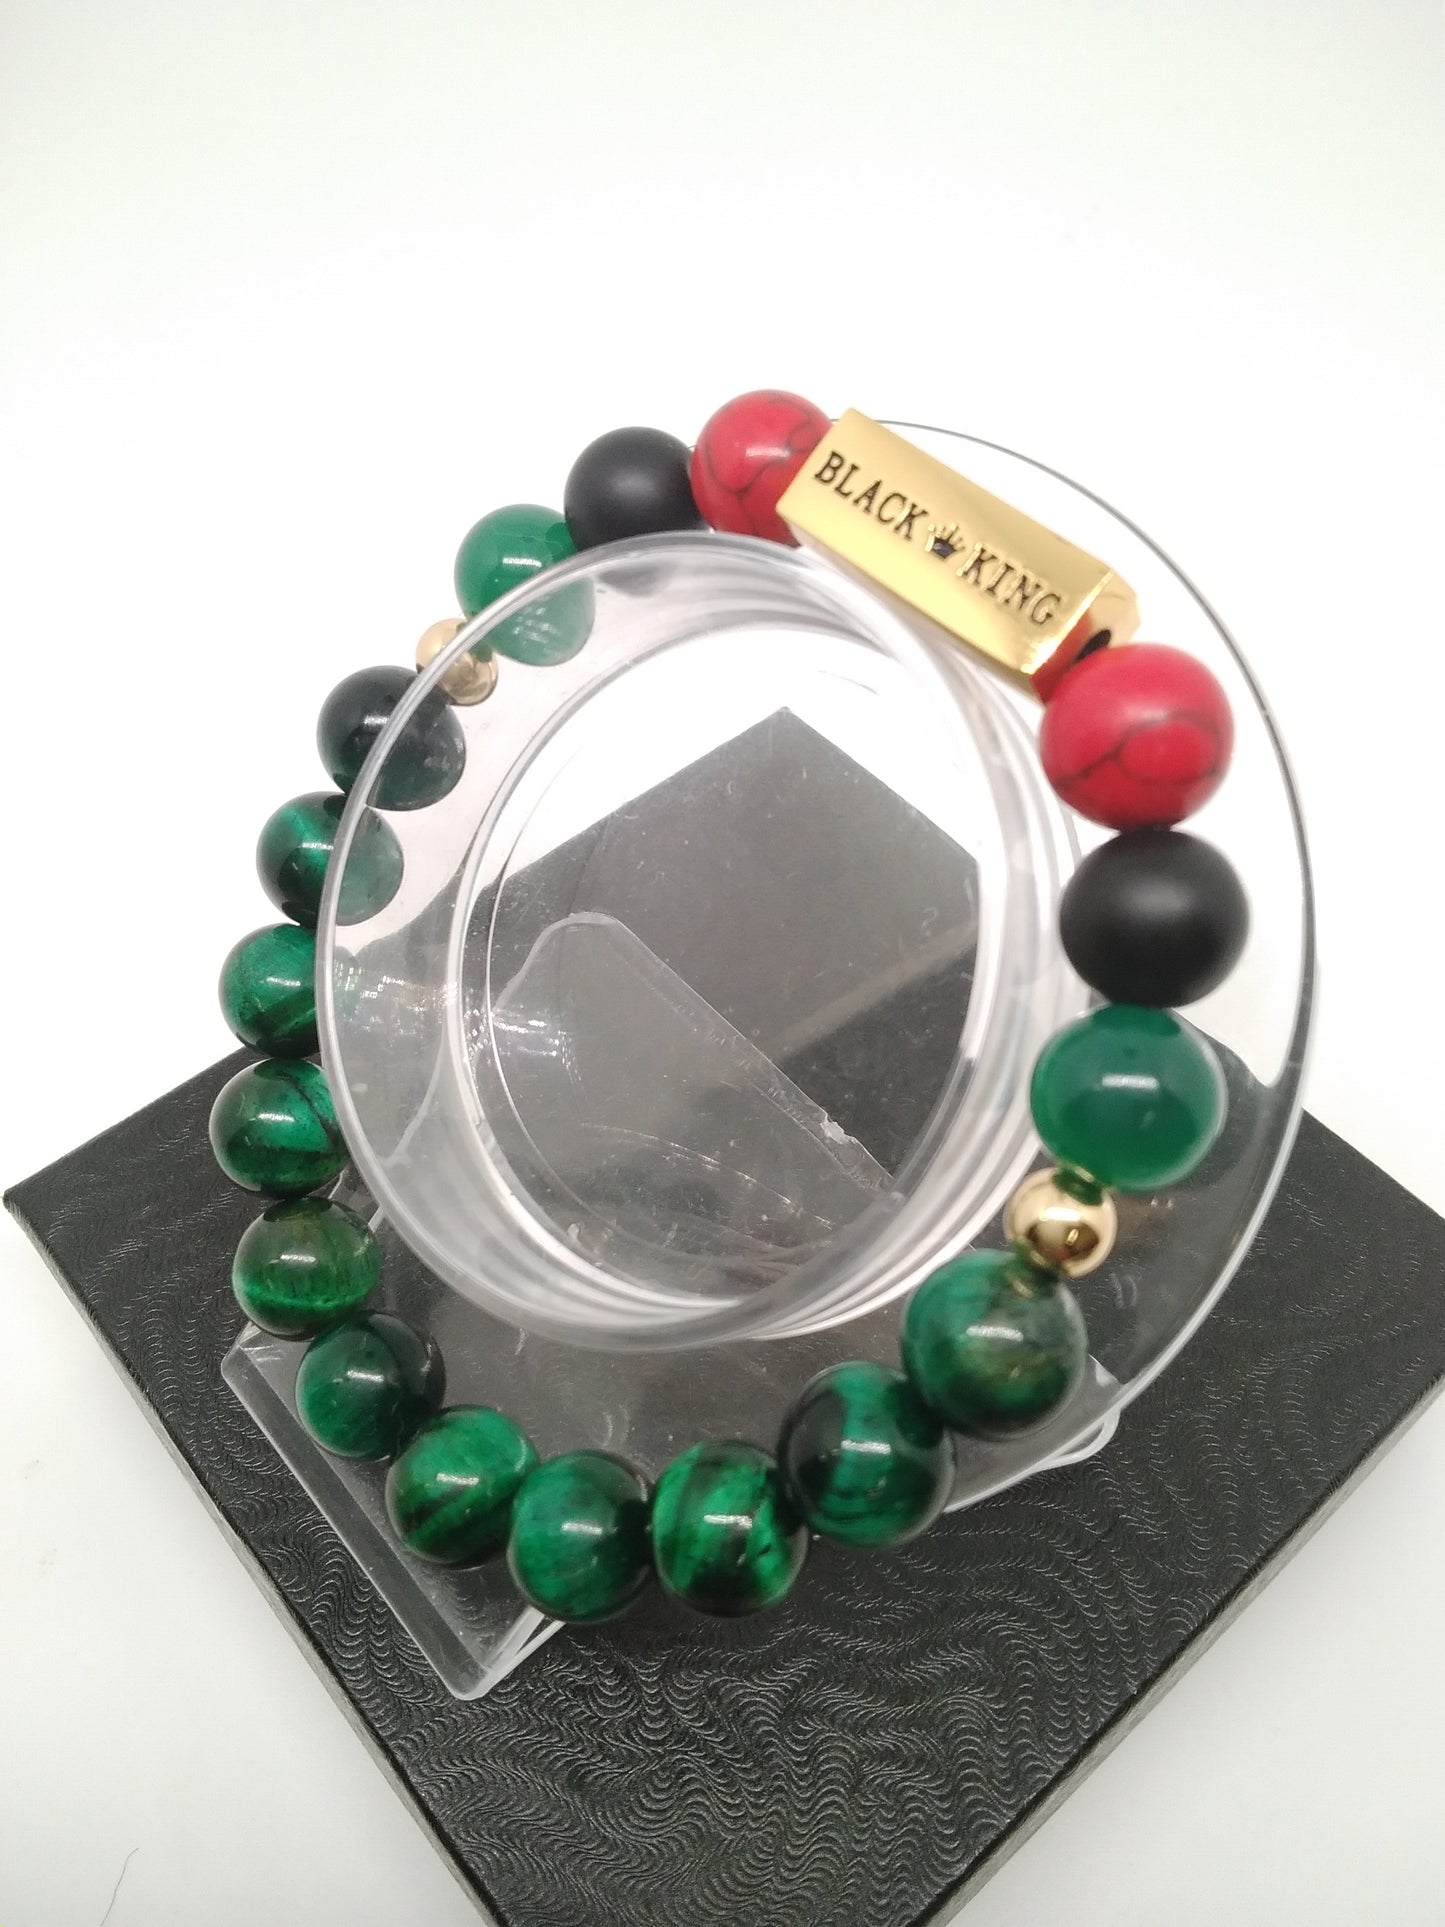 Red, Black and Green "Black King" Bracelet